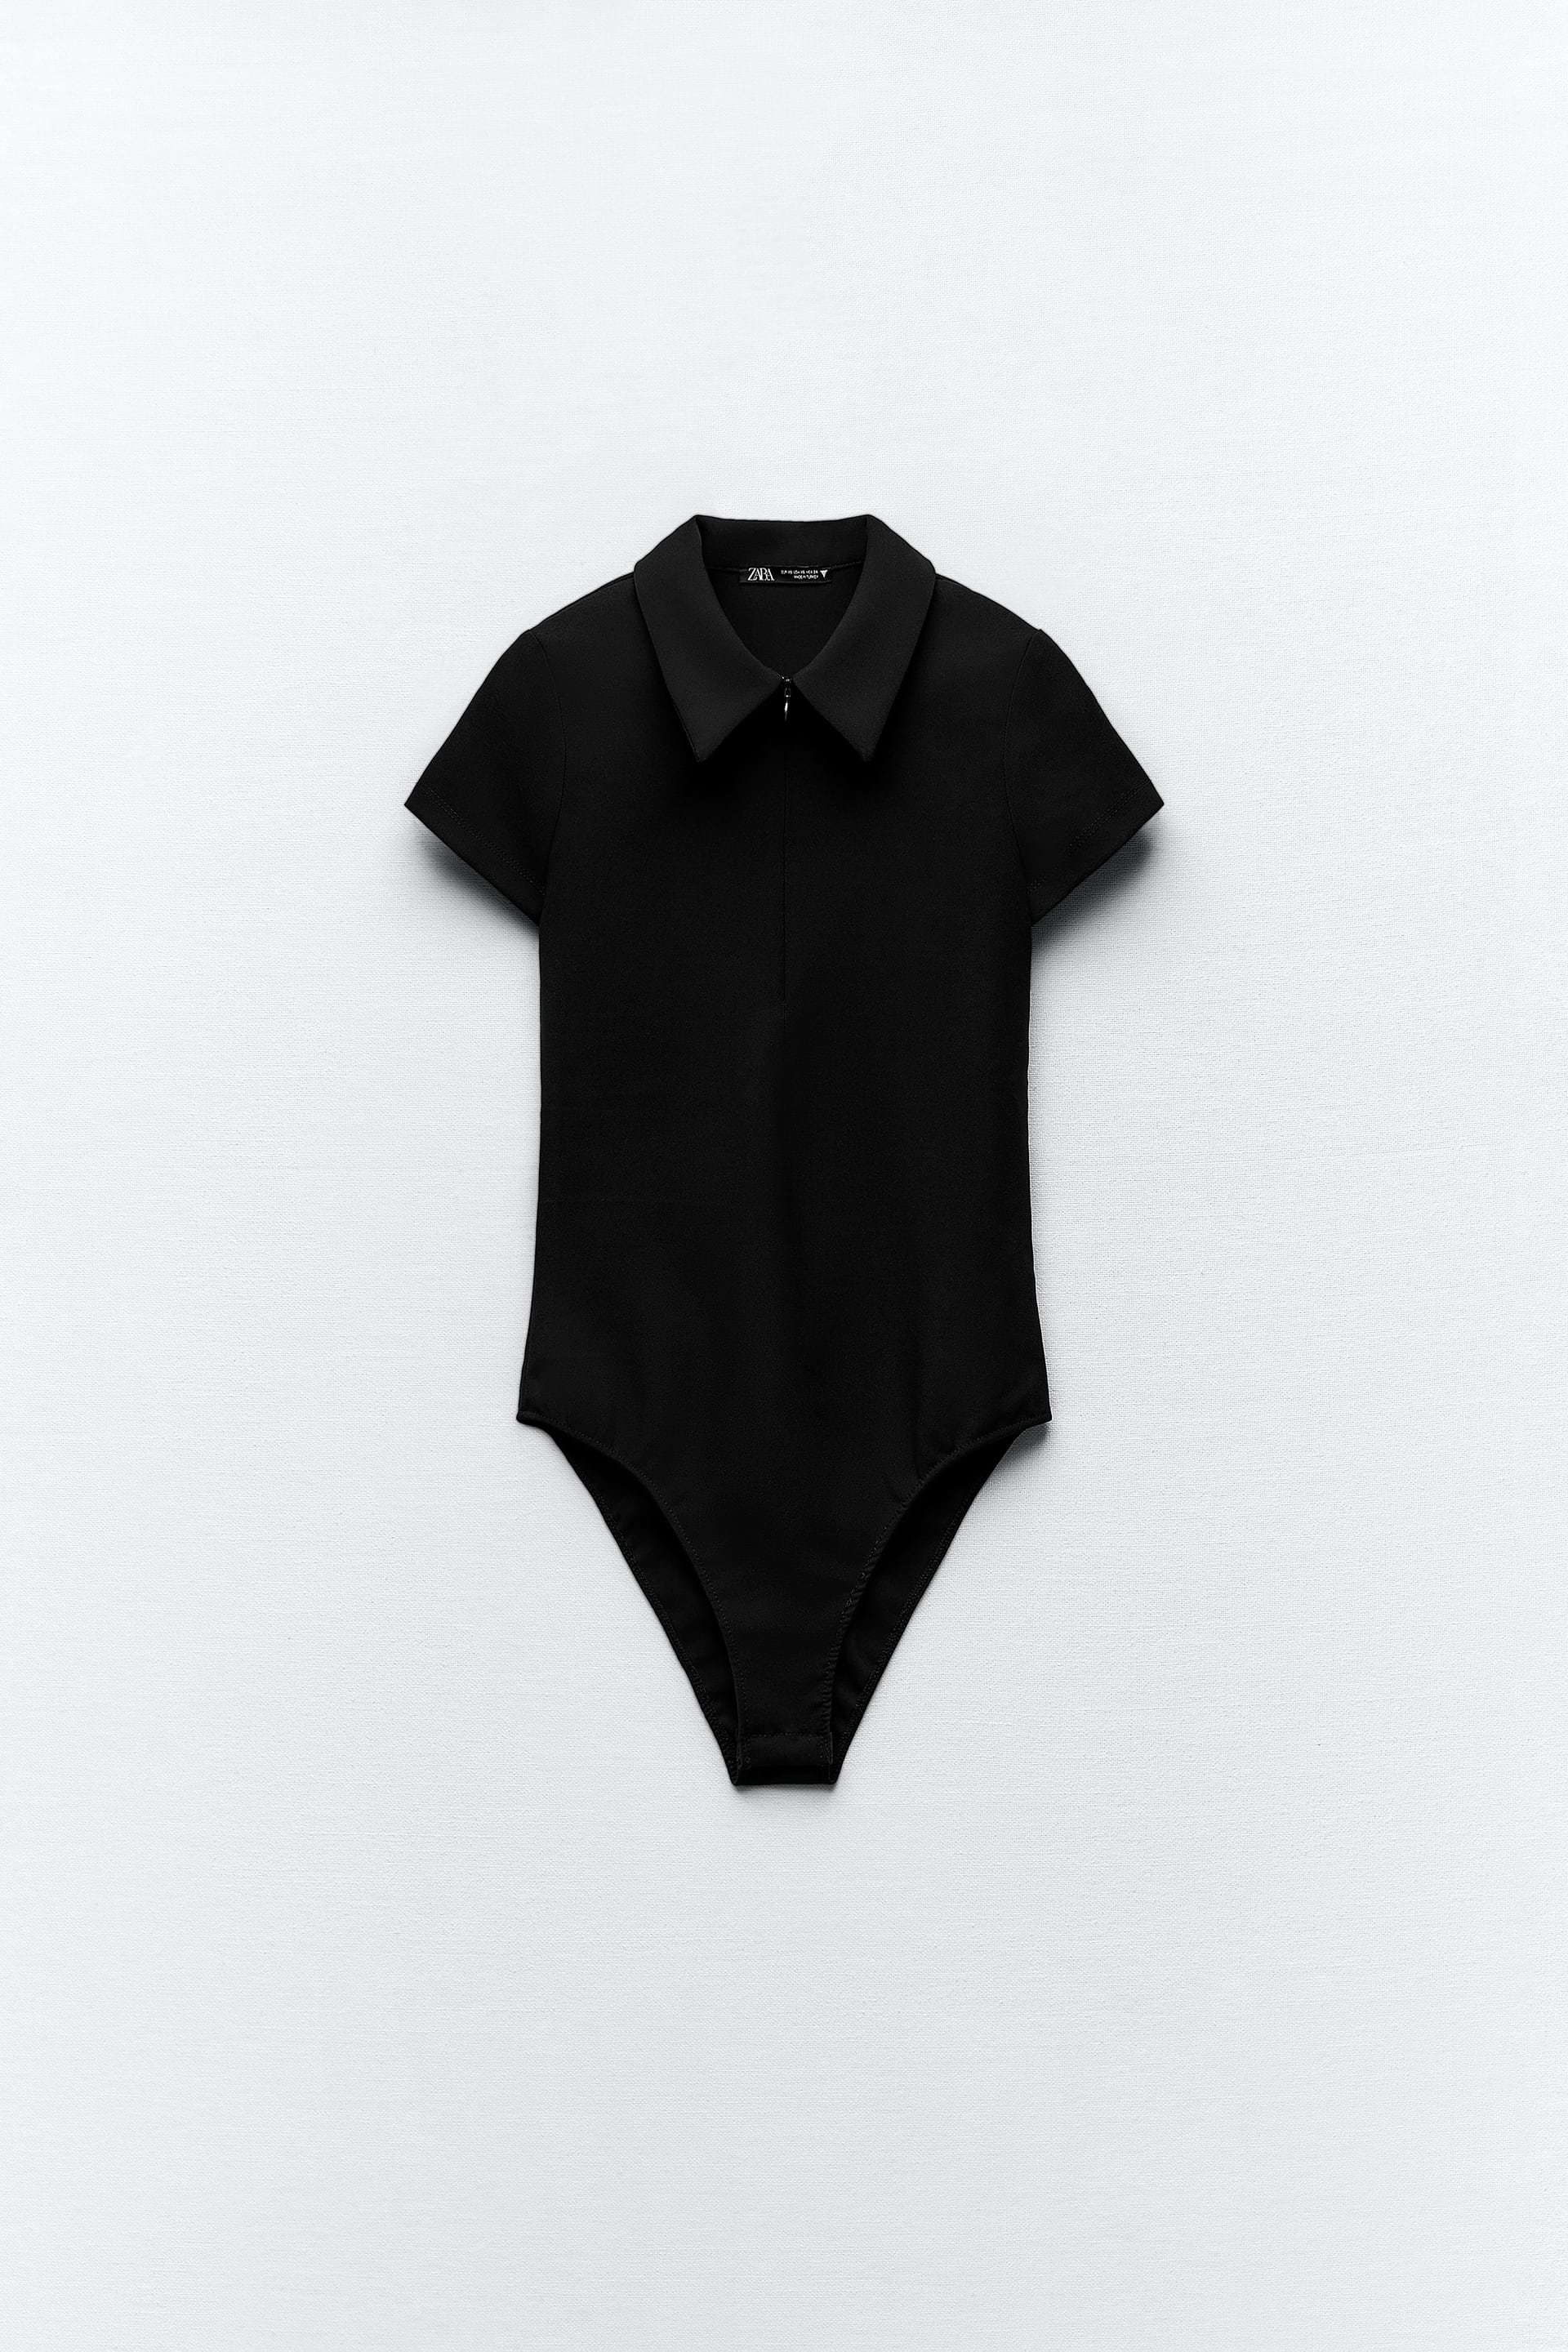 Body negro con cuello polo de Zara (19,95 euros).